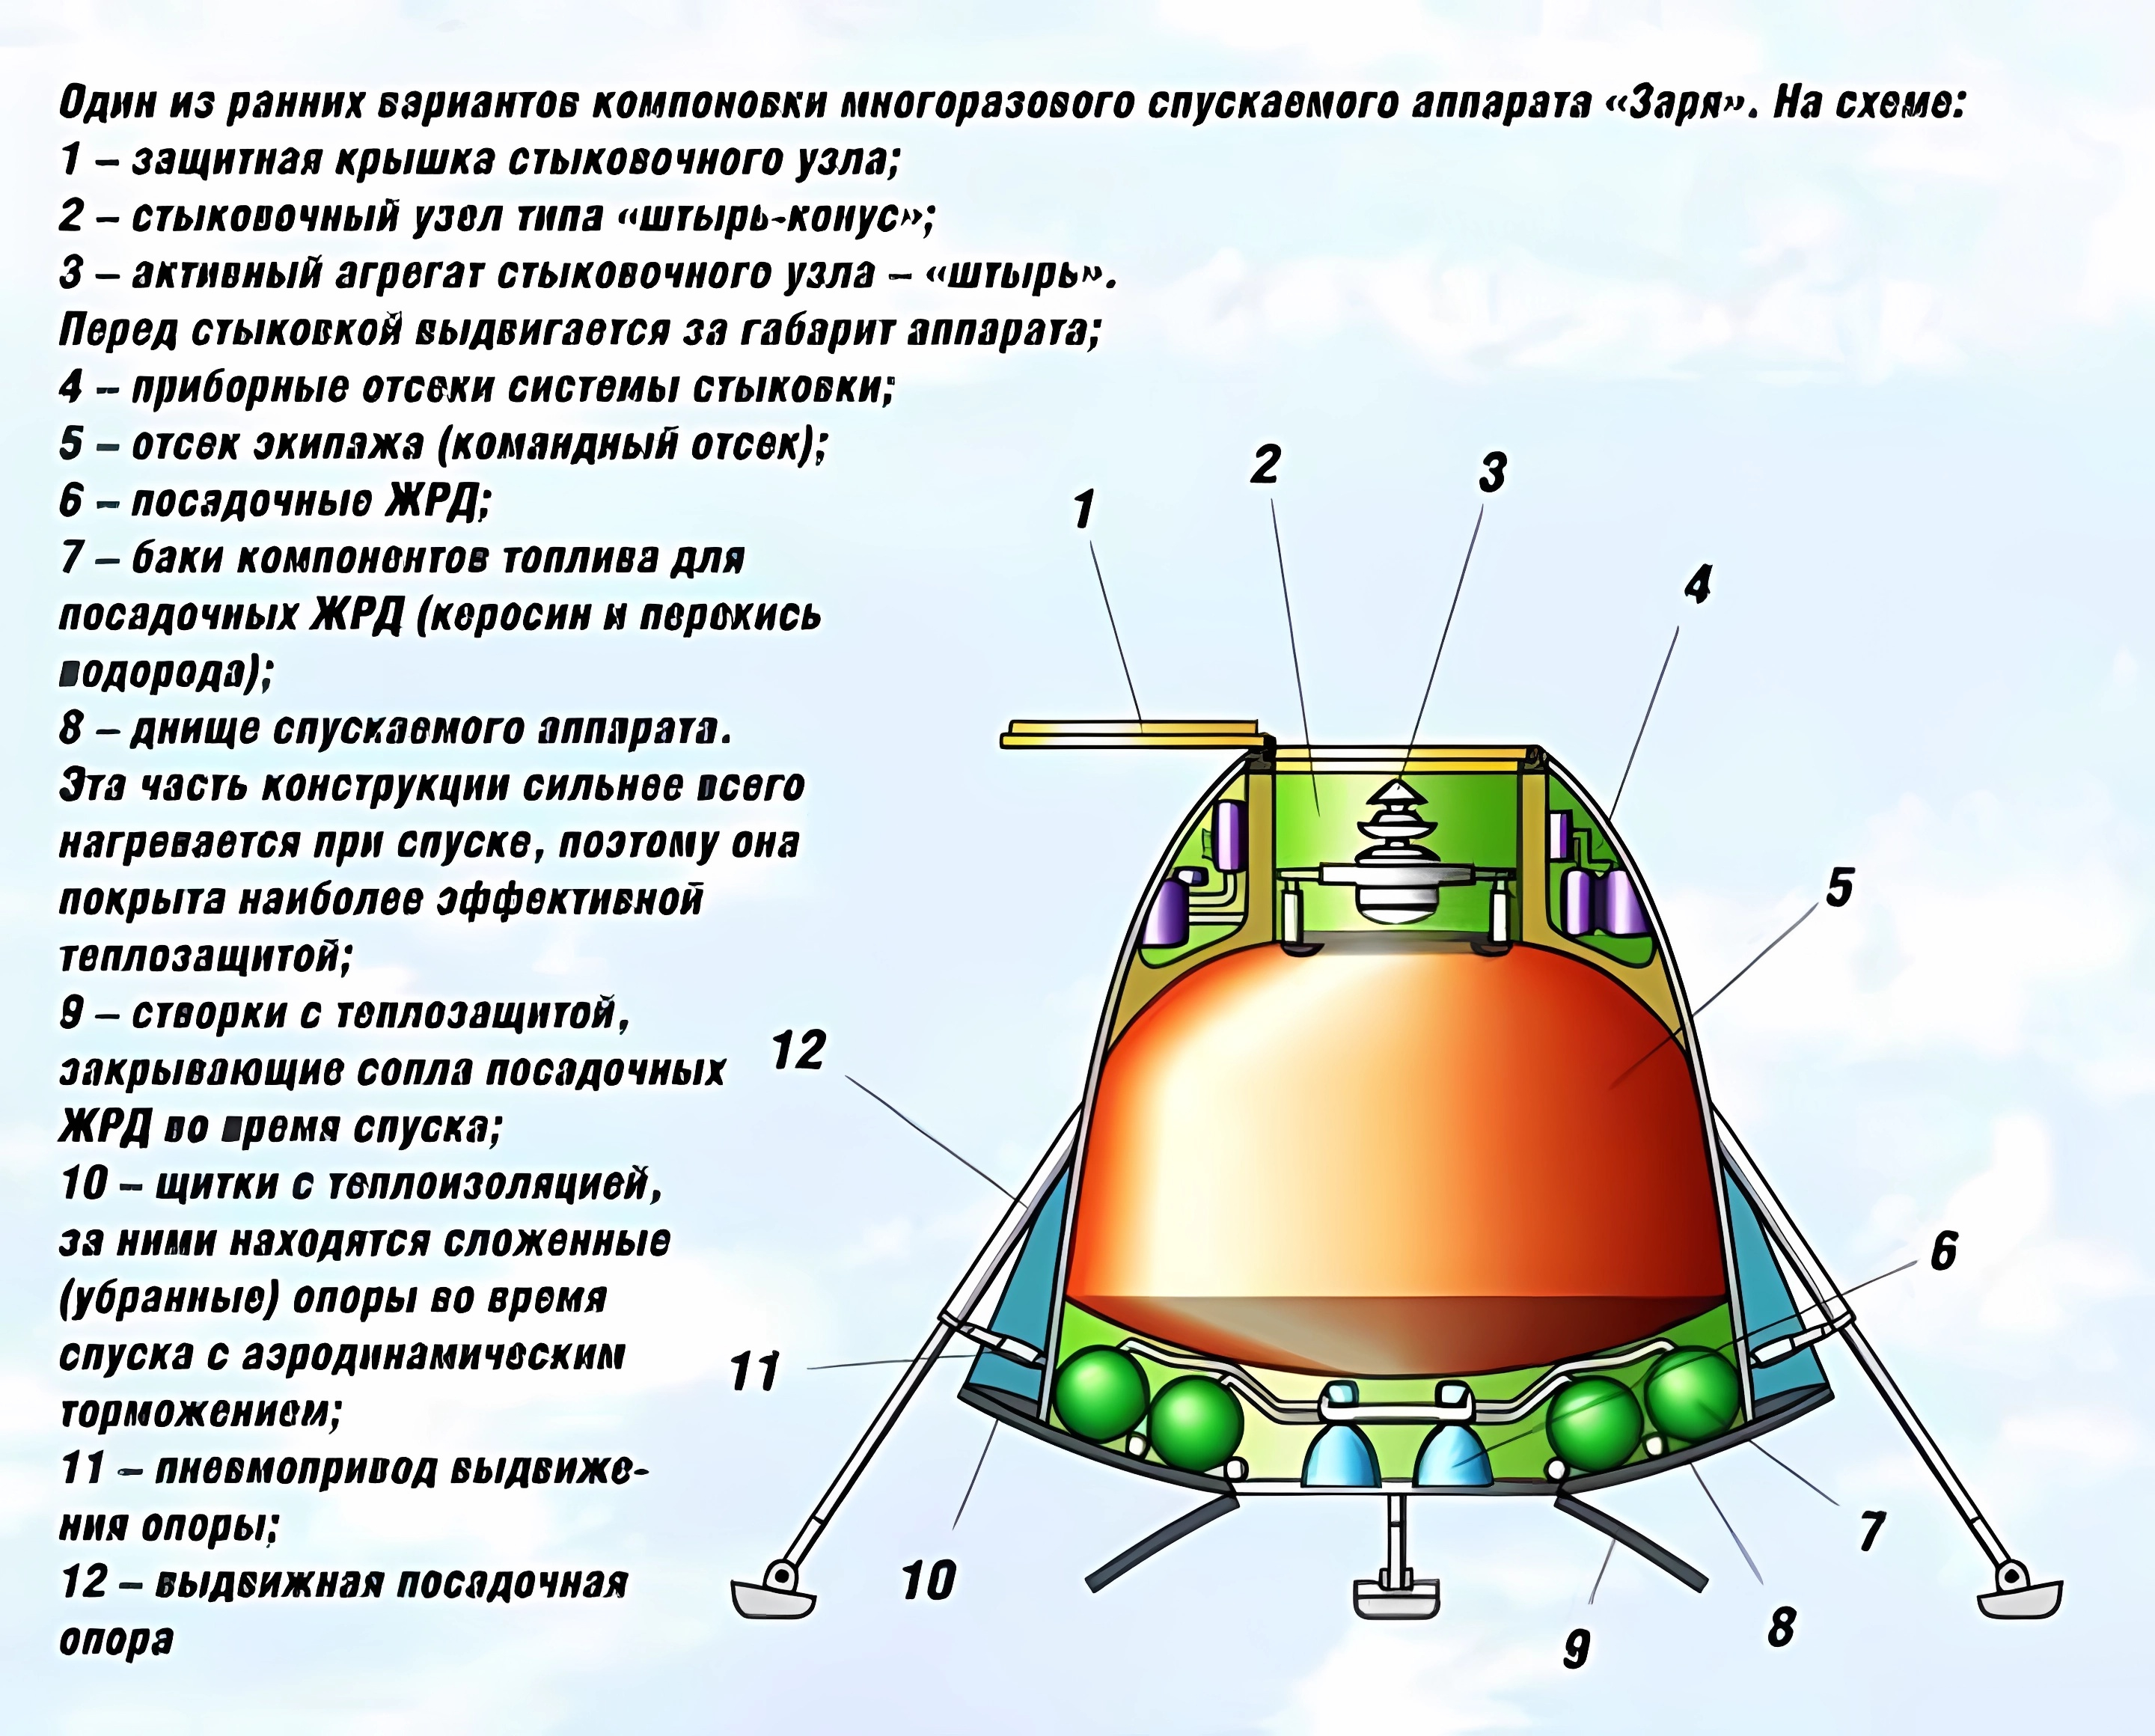 Спускаемый аппарат советской станции. Многоразовый космический корабль Заря. Спускаемый аппарат Союз чертеж. Чертеж спускаемого аппарата Союз. Многоразовый пилотируемый космический корабль 14ф70 Заря.